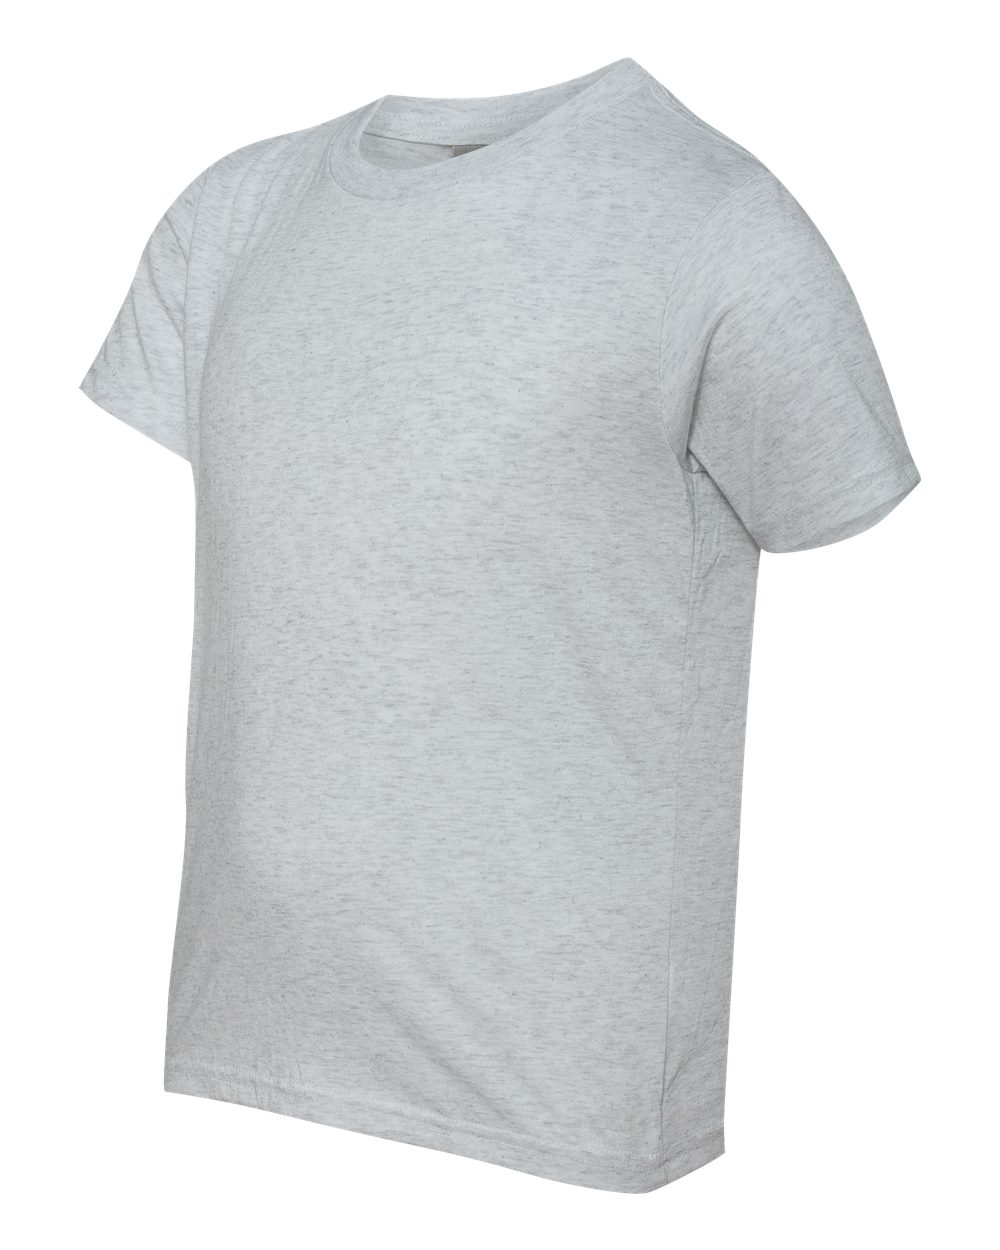 Next Level Apparel Unisex Ideal Heavyweight T-Shirt - Ravenspring